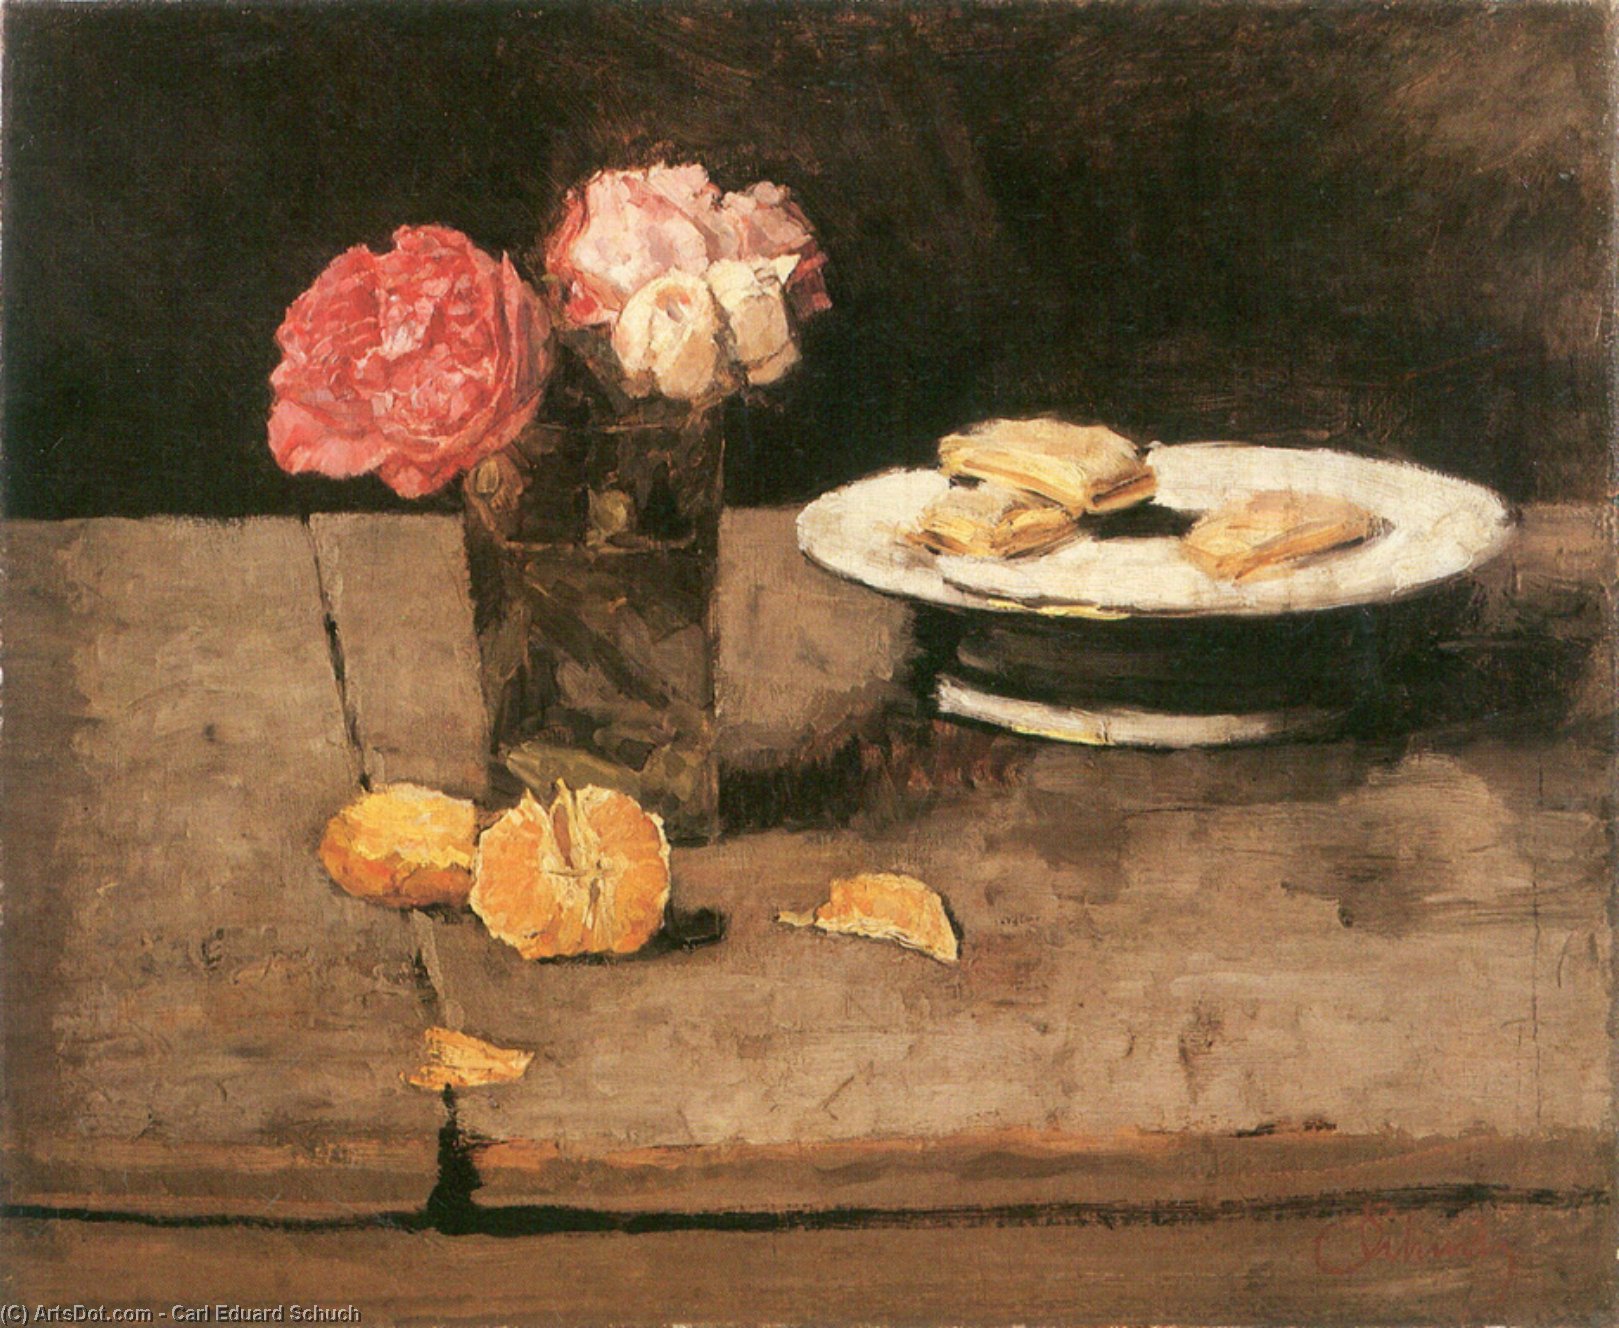 WikiOO.org - Enciclopédia das Belas Artes - Pintura, Arte por Carl Eduard Schuch - Roses, orange and biscuits on a plate